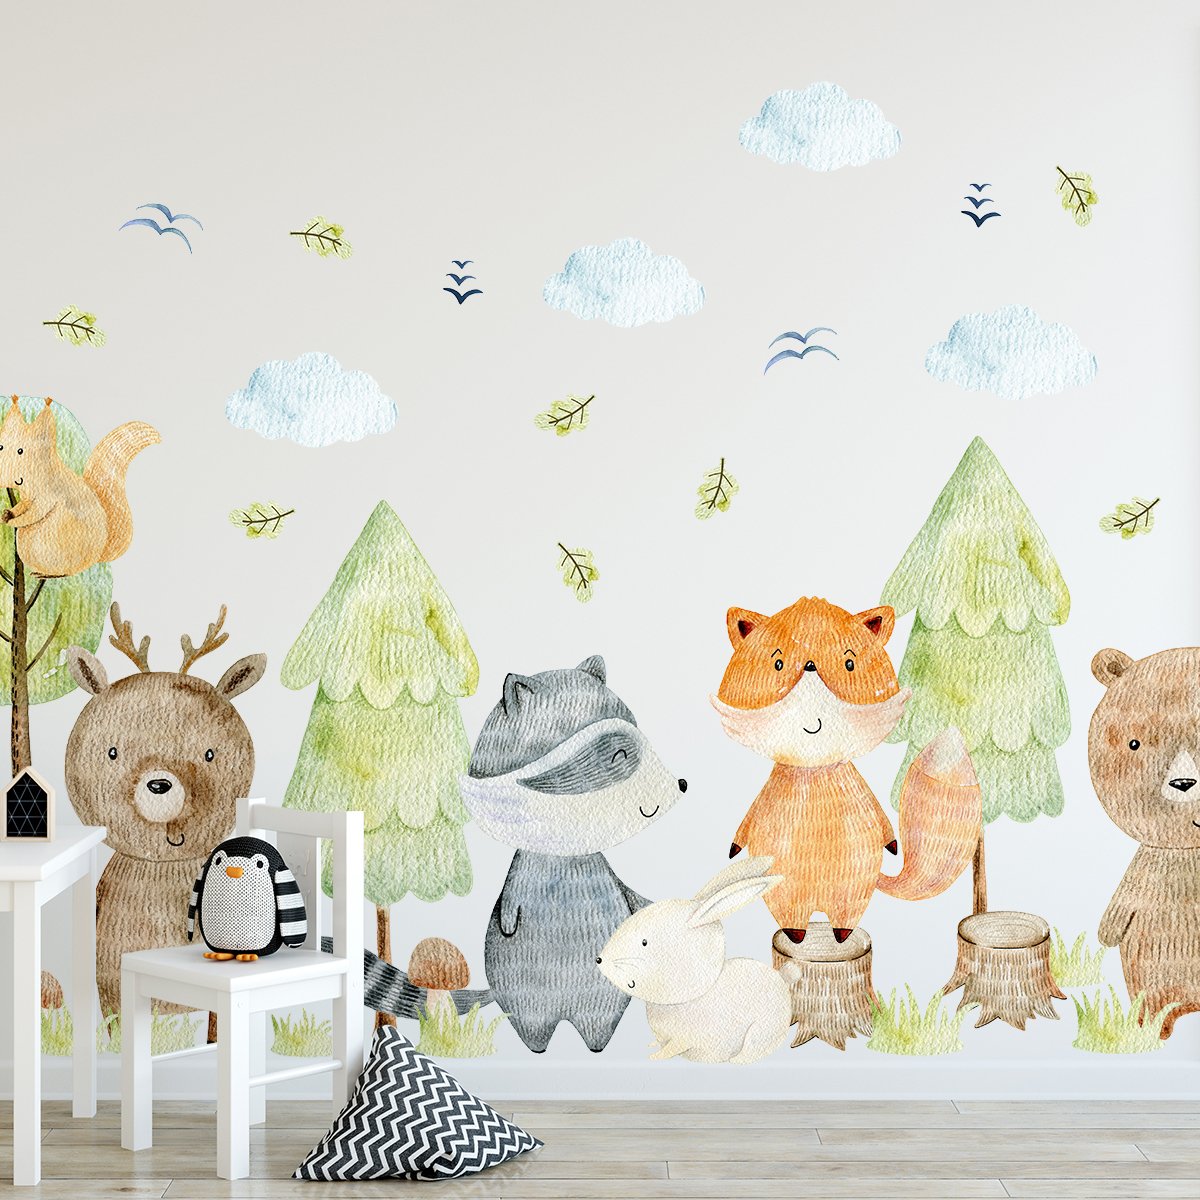 Naklejki ścienne dla dzieci zielony las i zwierzęta leśne - aranżacja ścian pokoju dziecięcego w stylu leśnym